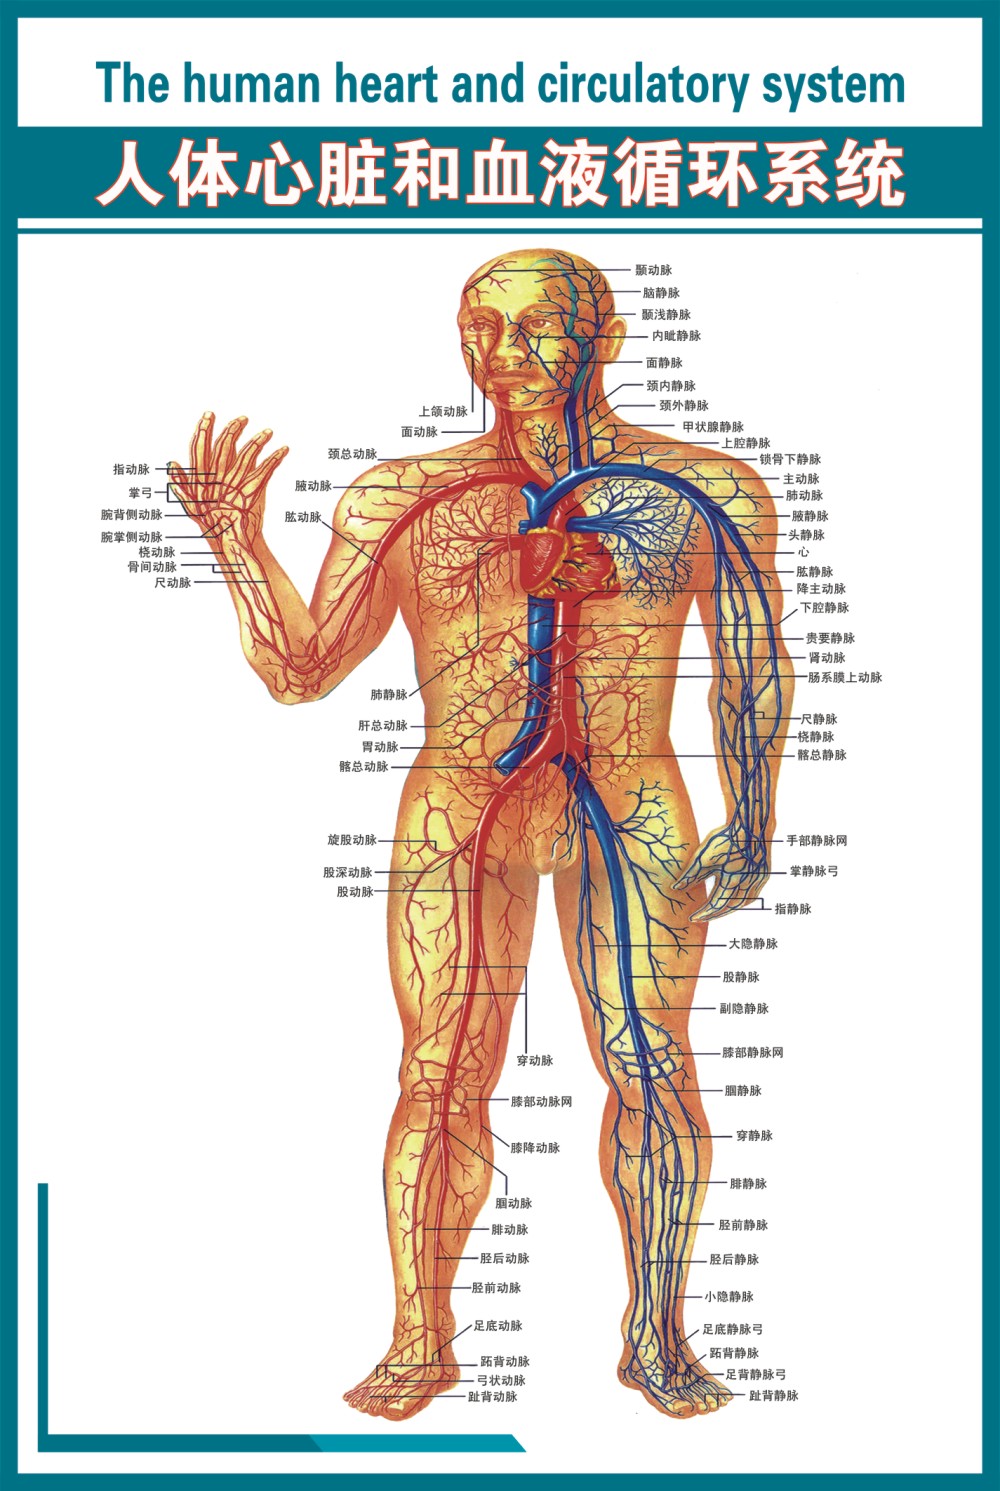 心脑血管知识海报11《人体心脏和血液循环系统》写真海报覆膜防水